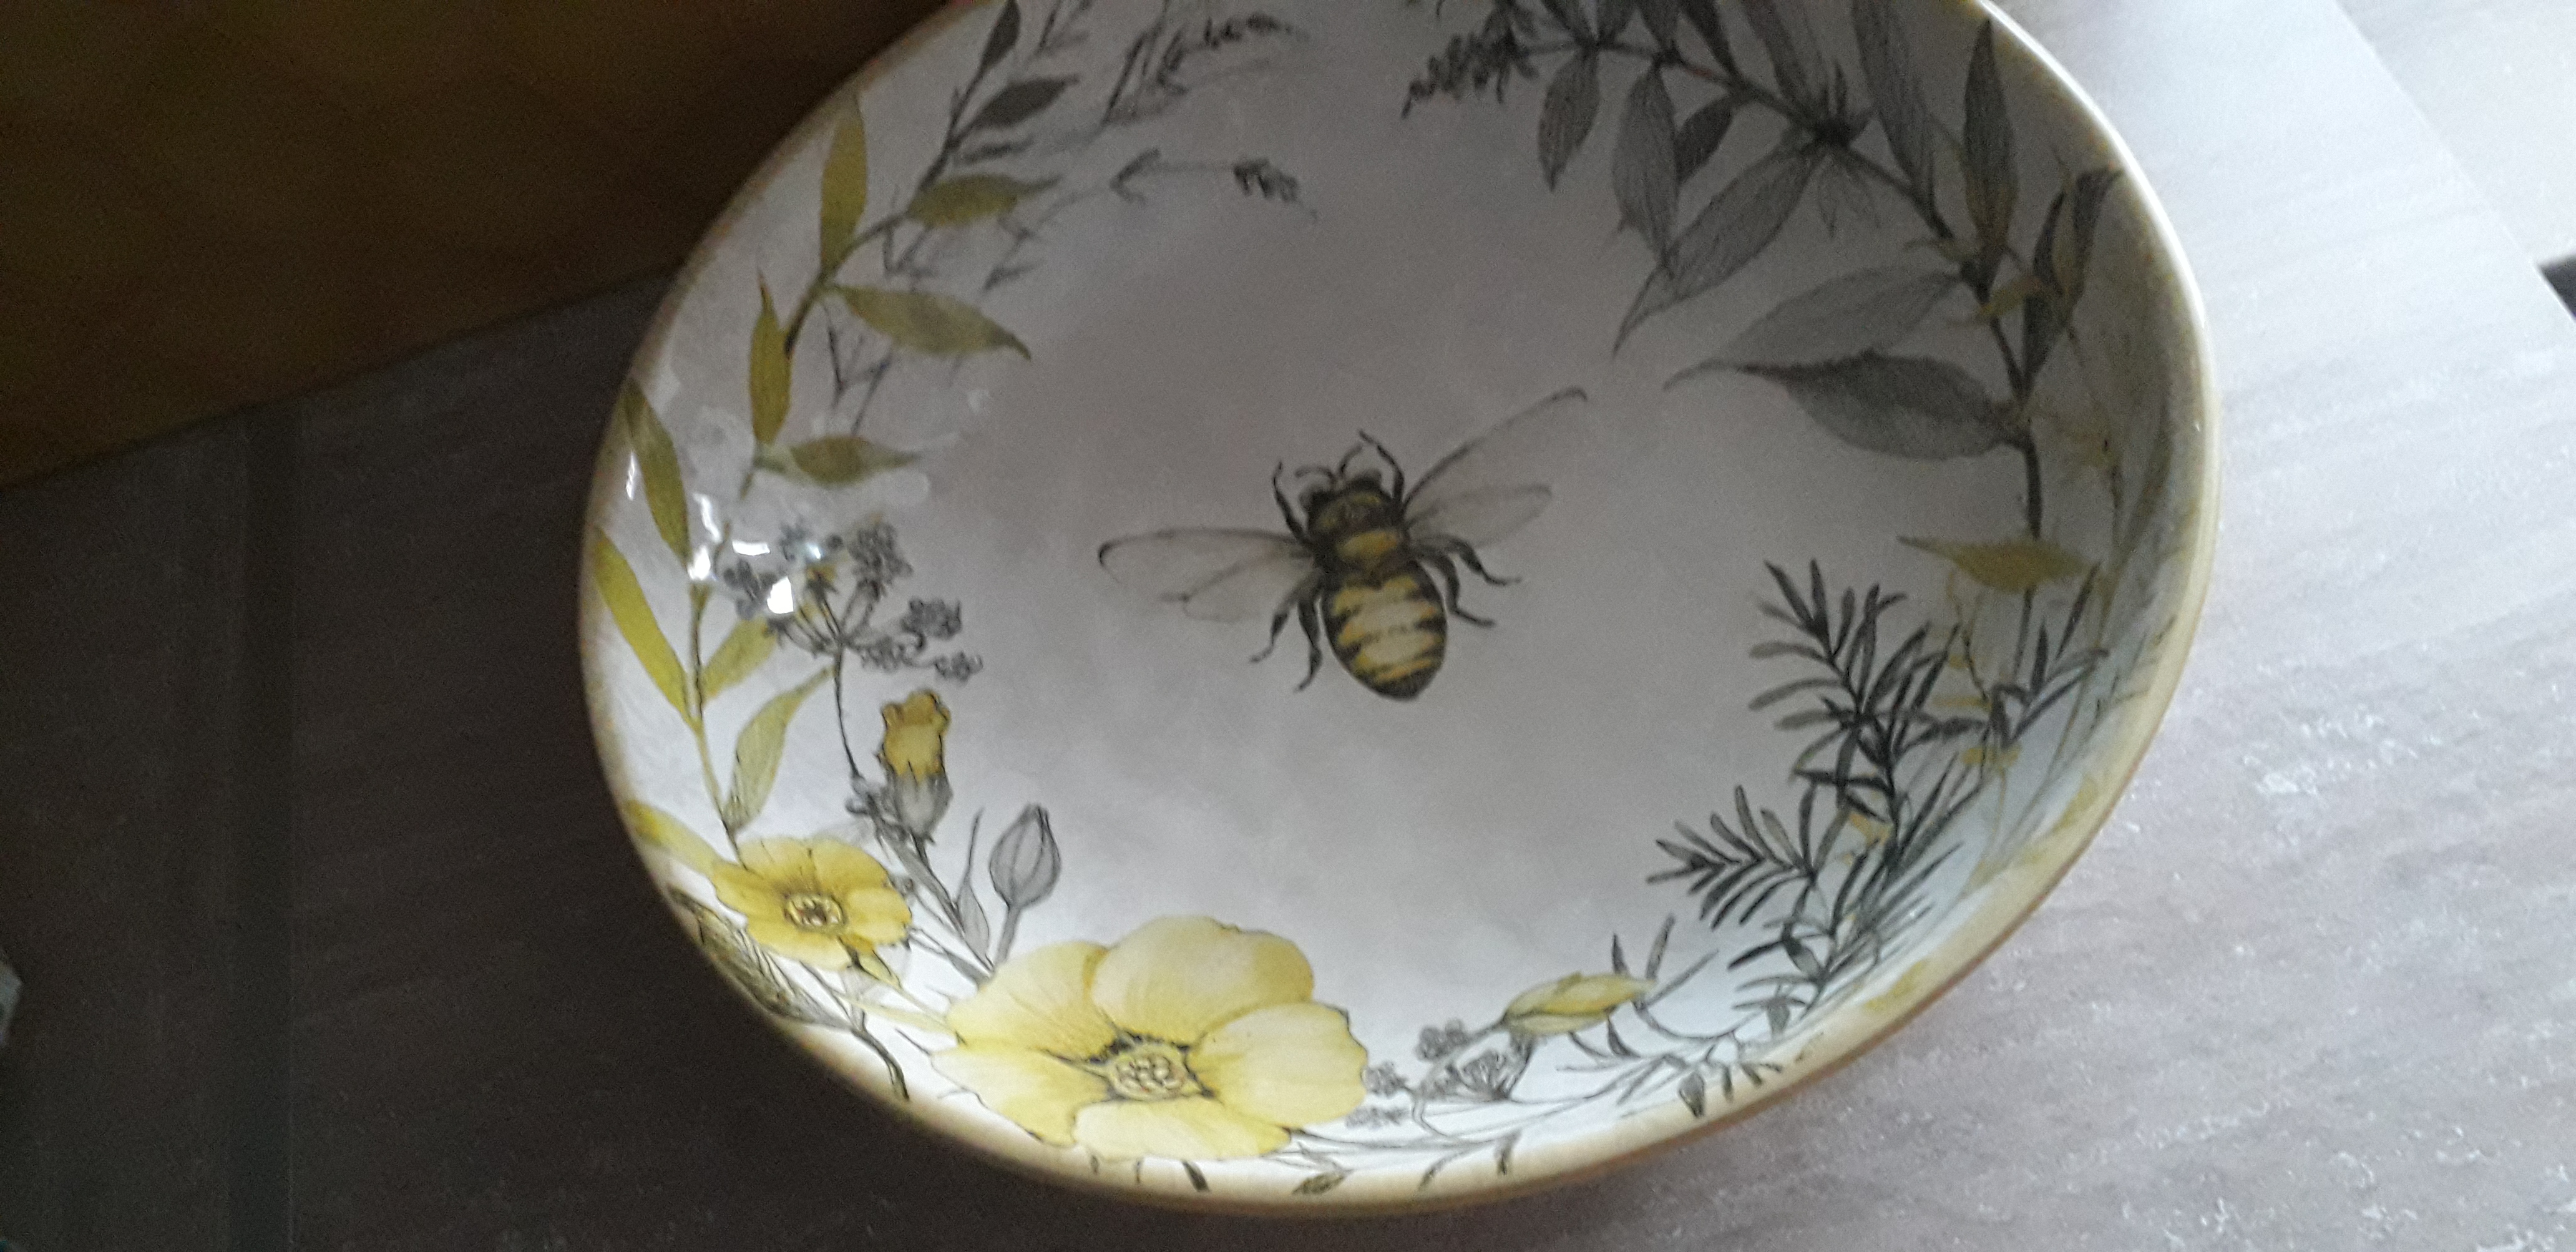 Фото-отзыв пользователя к товару: Салатник с изображением цветов и пчелы "Сладкий мед"